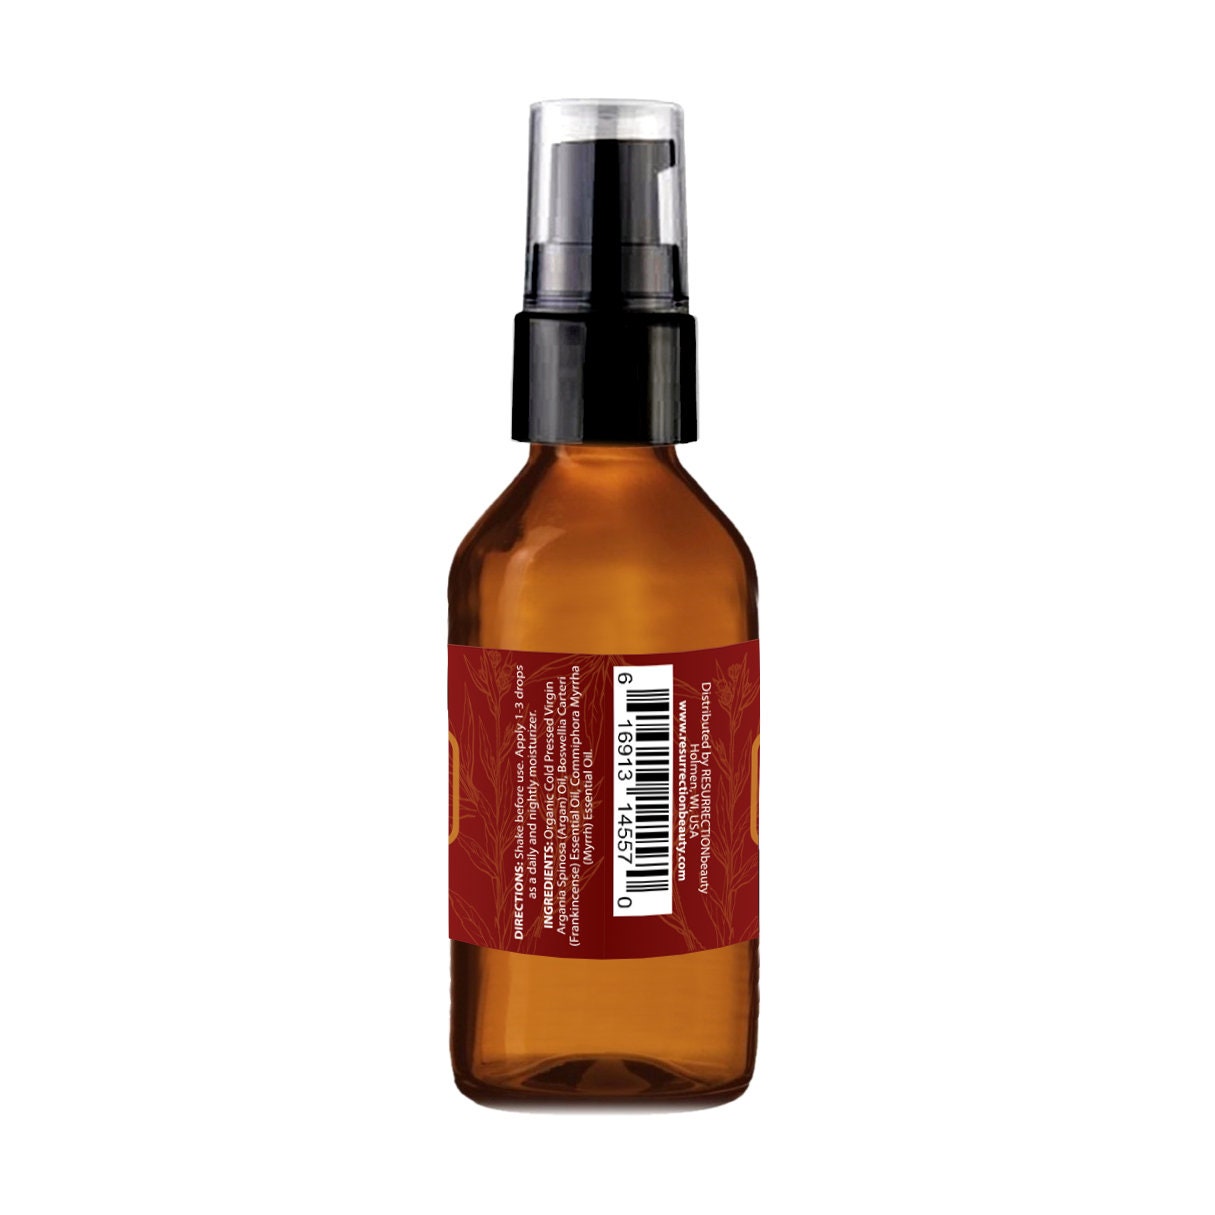 Anointing Oil - Frankincense & Myrrh - 6 Pack - 1/4 oz Glass Bottle